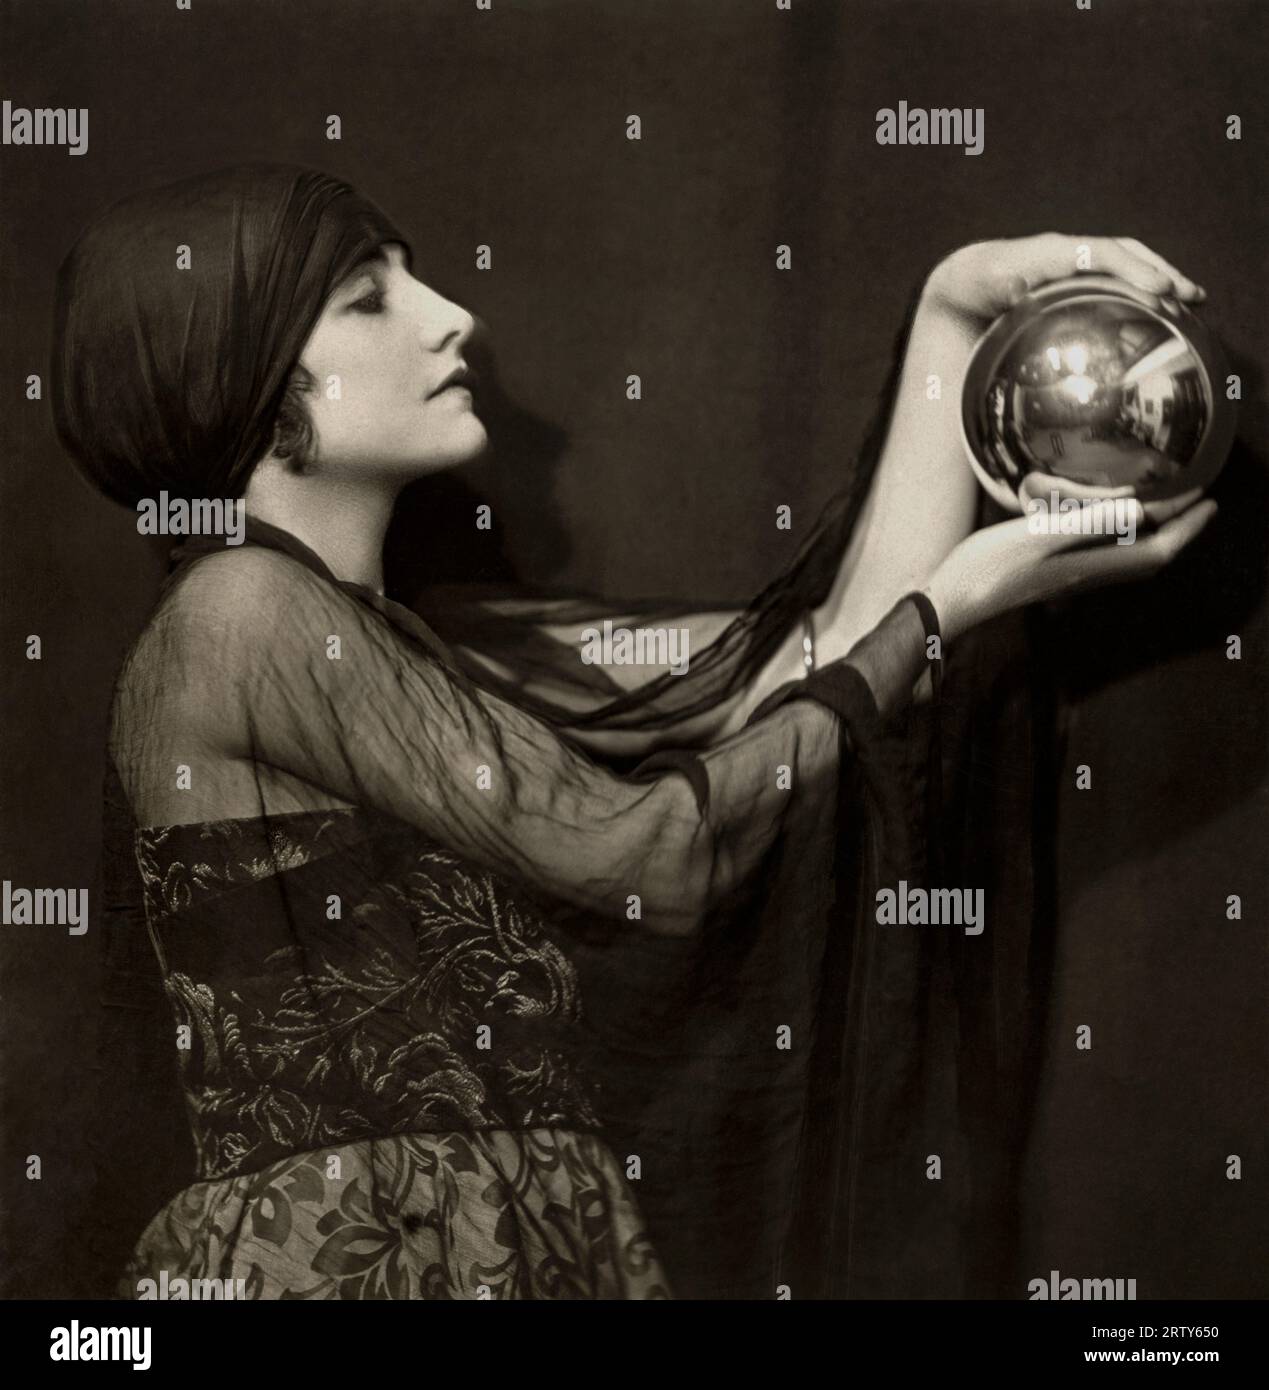 Londres, Angleterre c. 1920. L'actrice de cinéma muet Manora (aka Manvia) regarde le mystique dans une boule de cristal qu'elle tient dans ses mains. Photographie d'Emil Otto Hoppe. Banque D'Images